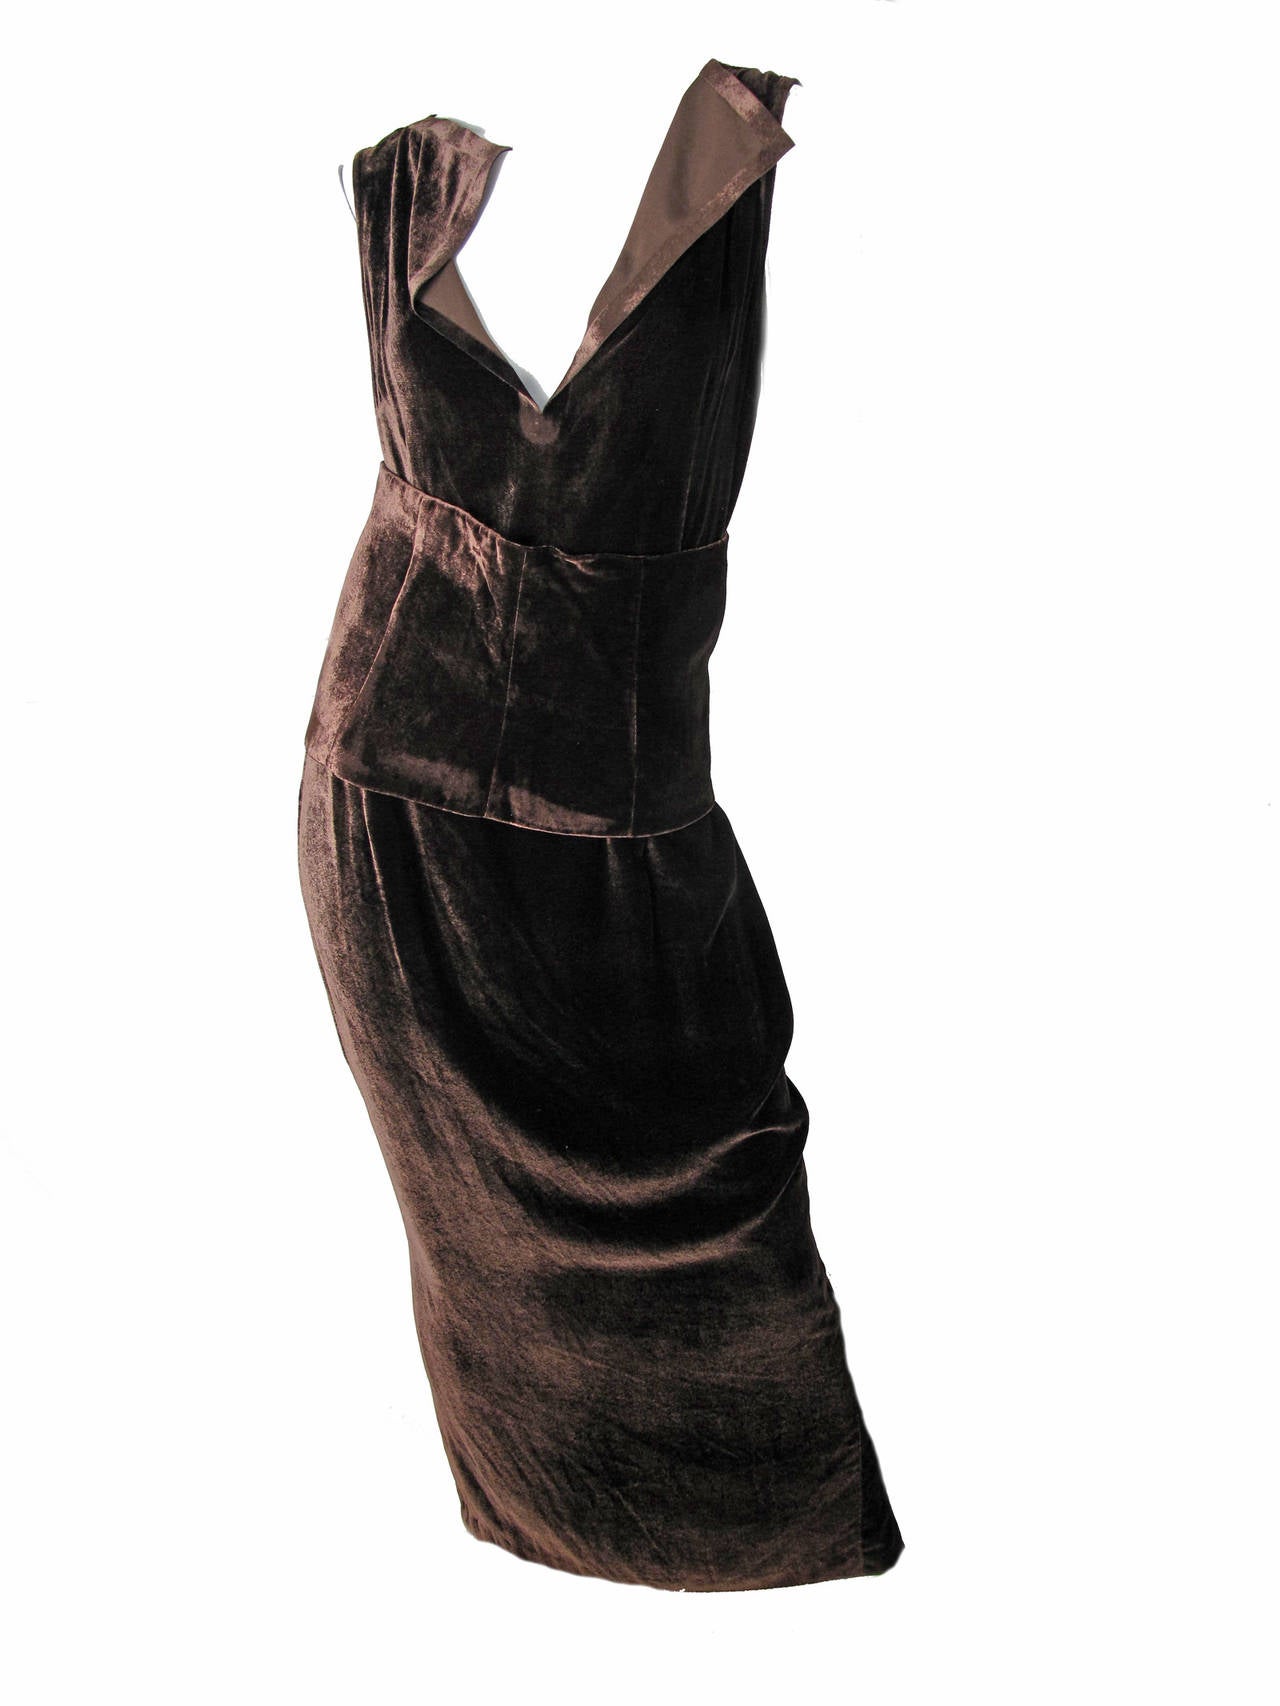 Maison Martin Margiela brown velvet gown with cummerbund.  Rayon, silk, spandex fabric. 
36